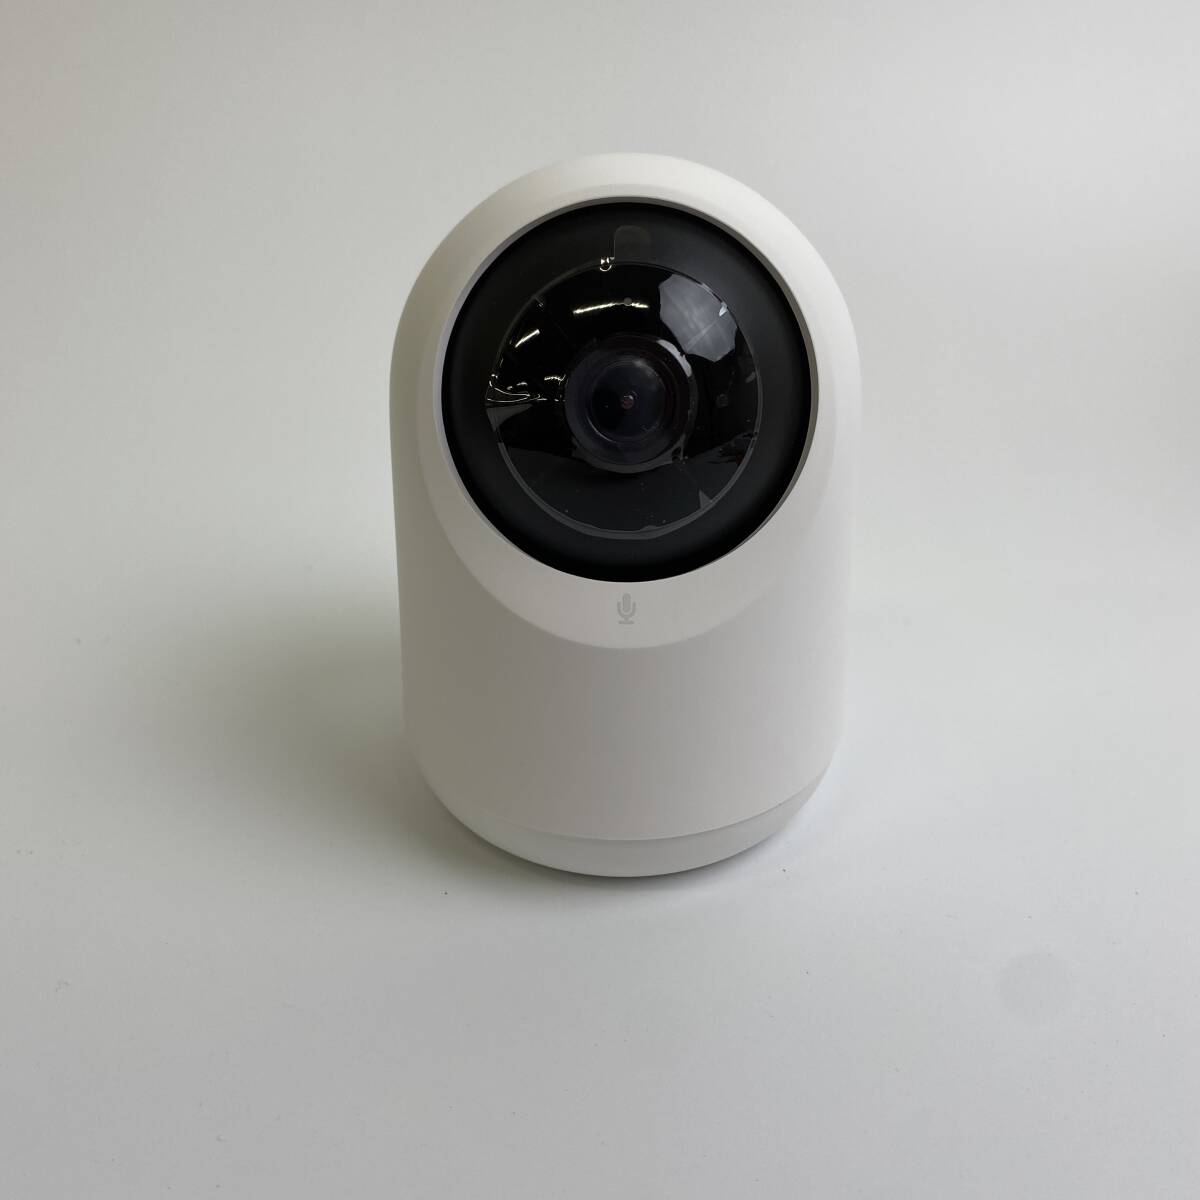 【1円オークション】 スイッチボット(SwitchBot) 防犯カメラ Alexa 屋内 カメラ ネットワークカメラ ベビーモニター TS01B001239